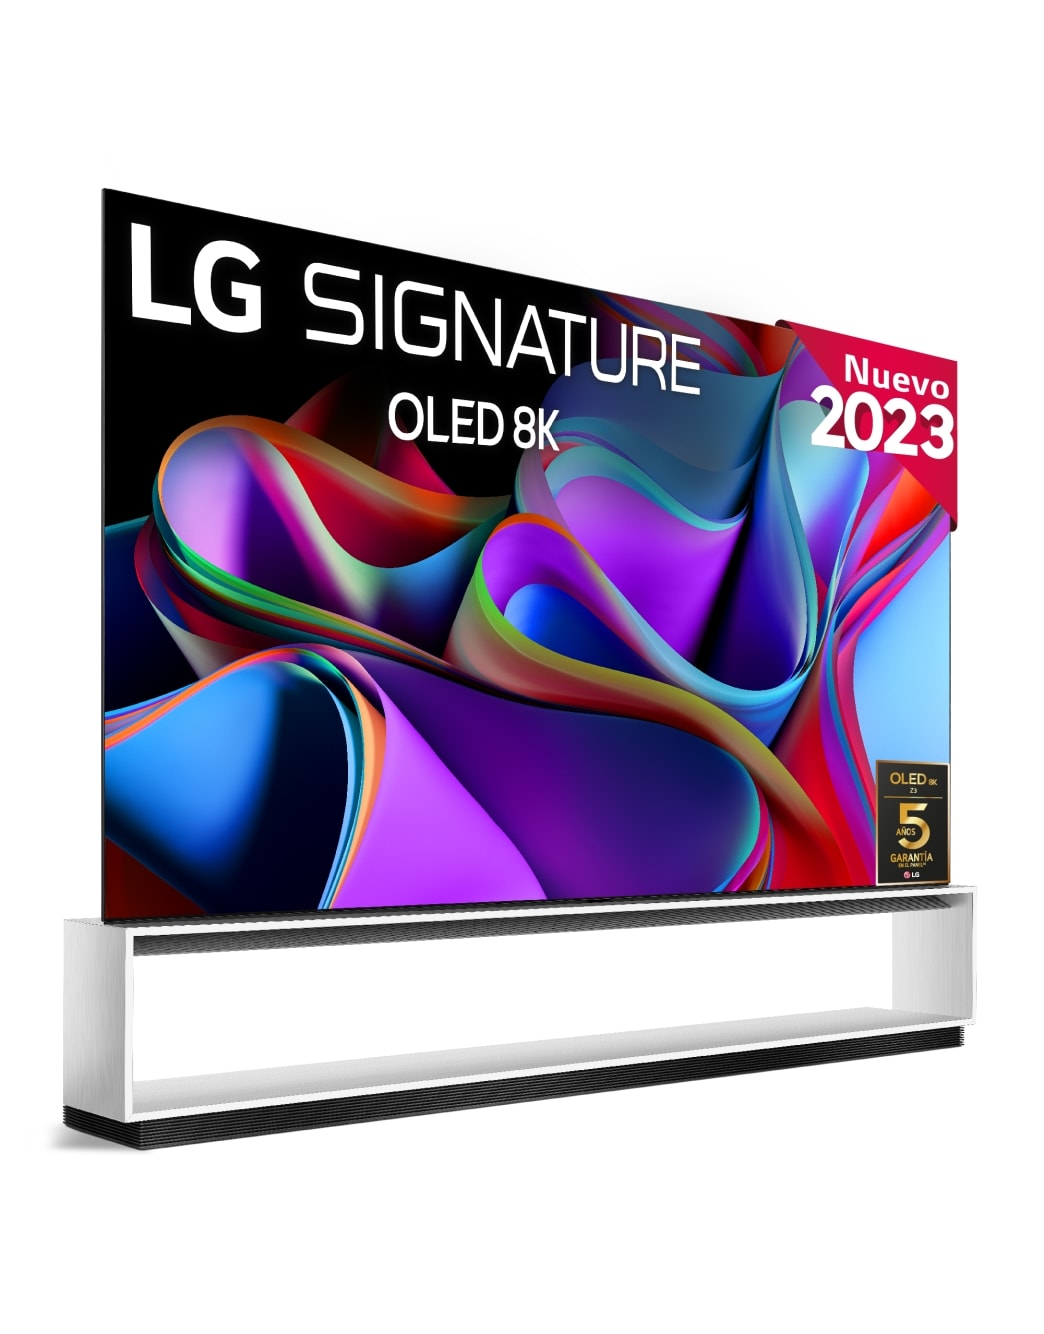 Comprar TV LG OLED evo 4K de 65'' C3, Procesador Máxima Potencia, Dolby  Vision / Dolby ATMOS, SmarTV webOS23, el mejor TV para Gaming. - Tienda LG